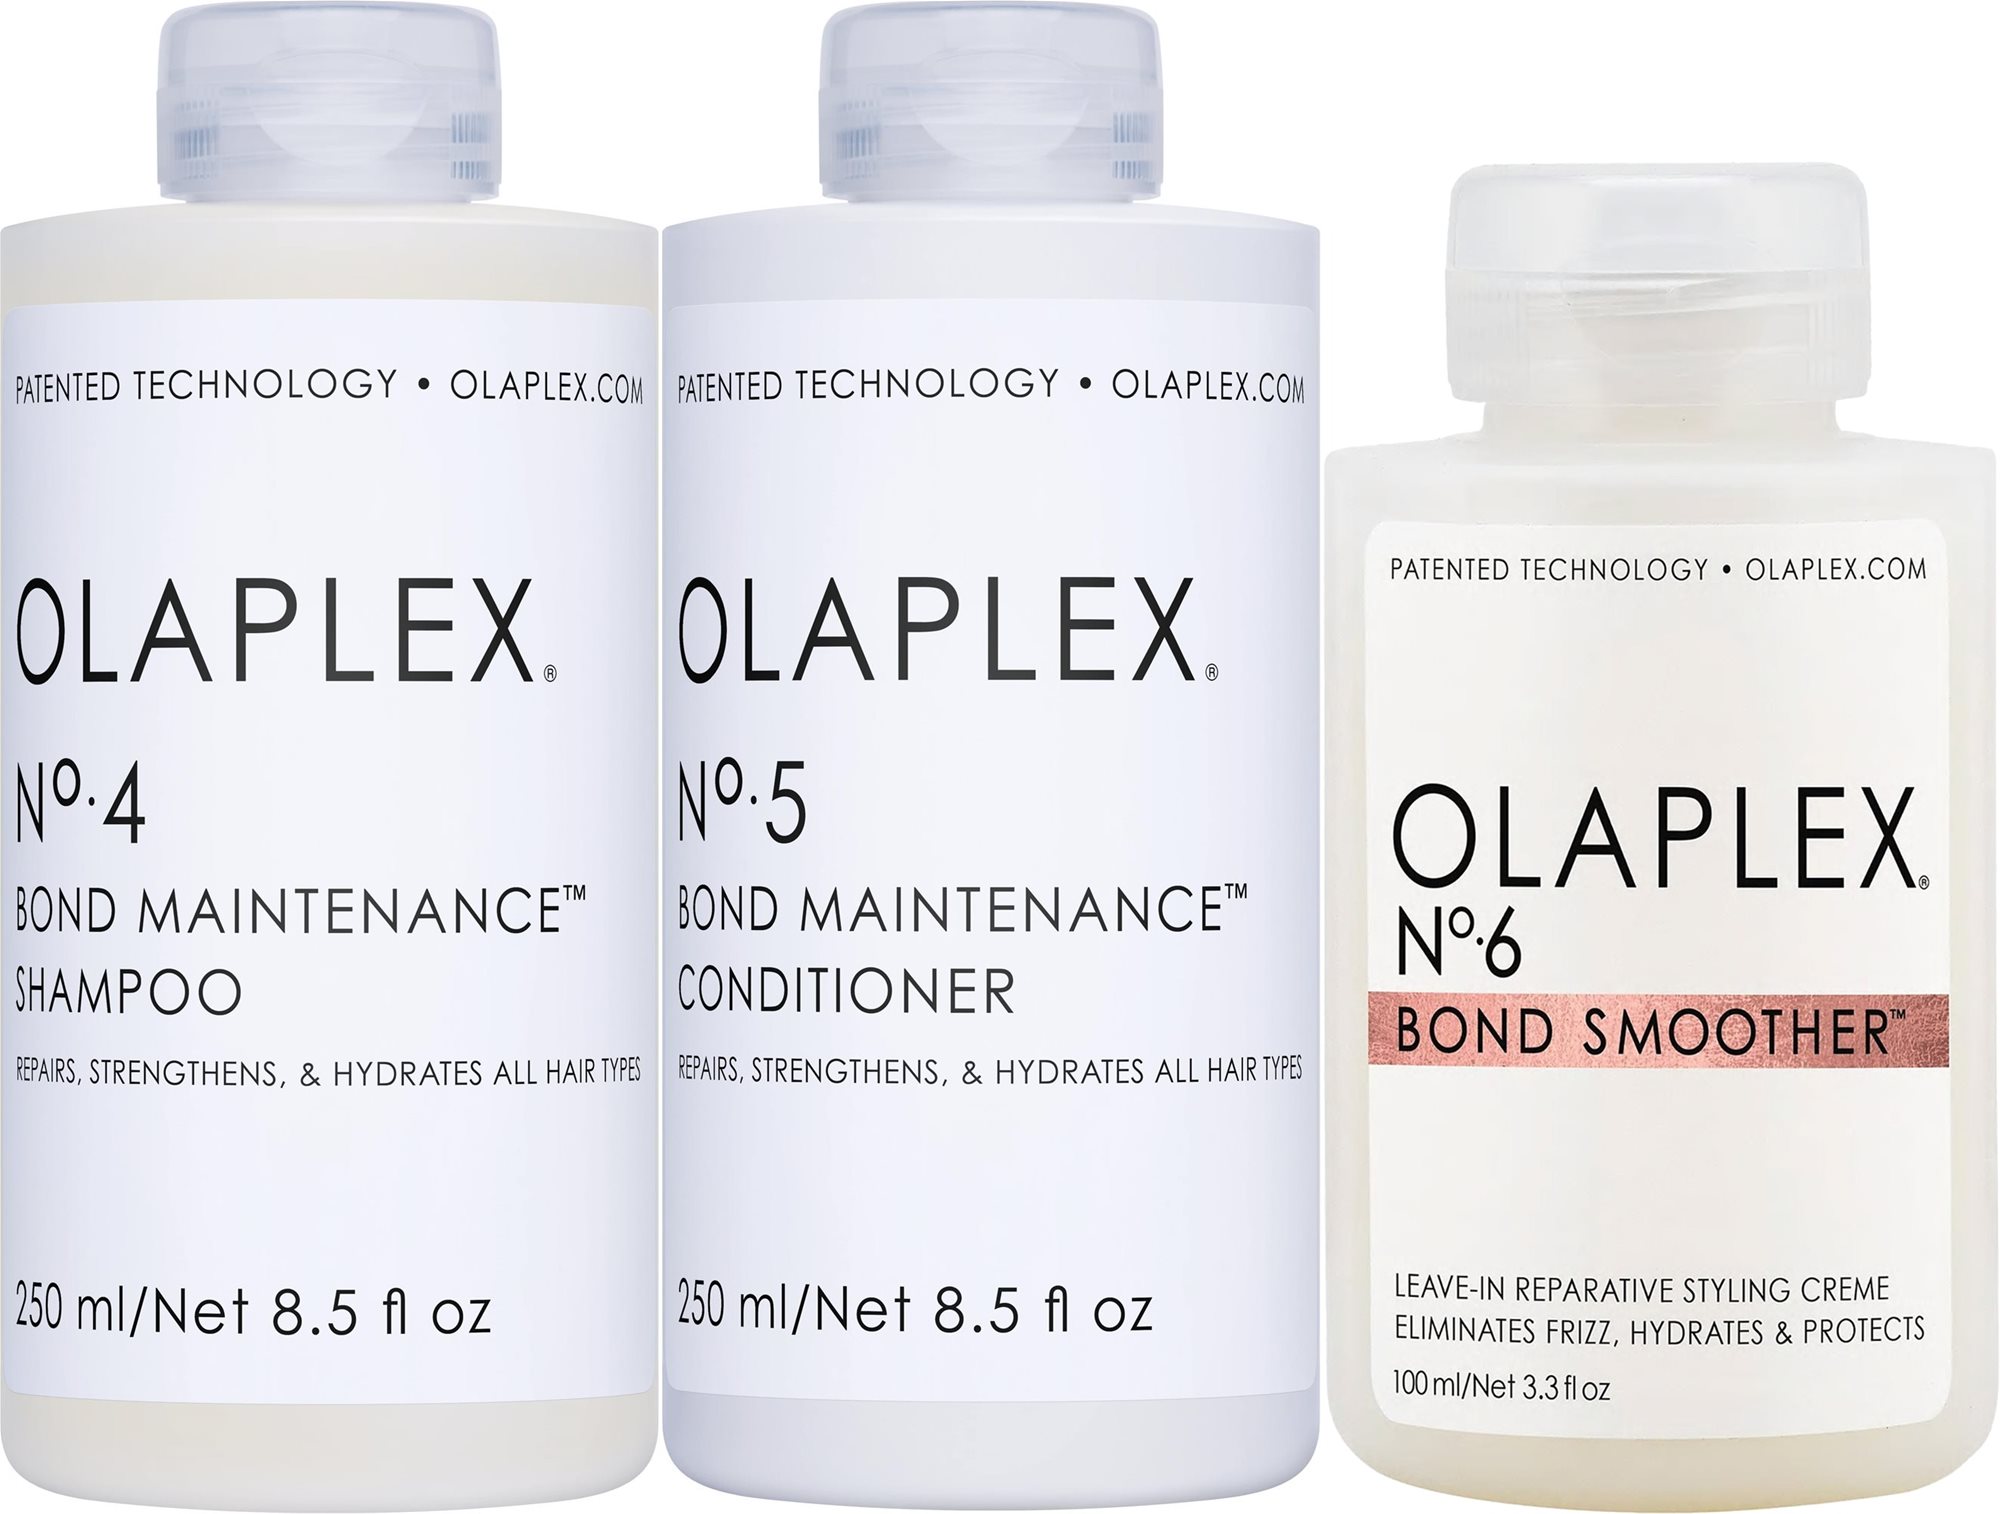 OLAPLEX Every Day Hair Care Set 600 ml